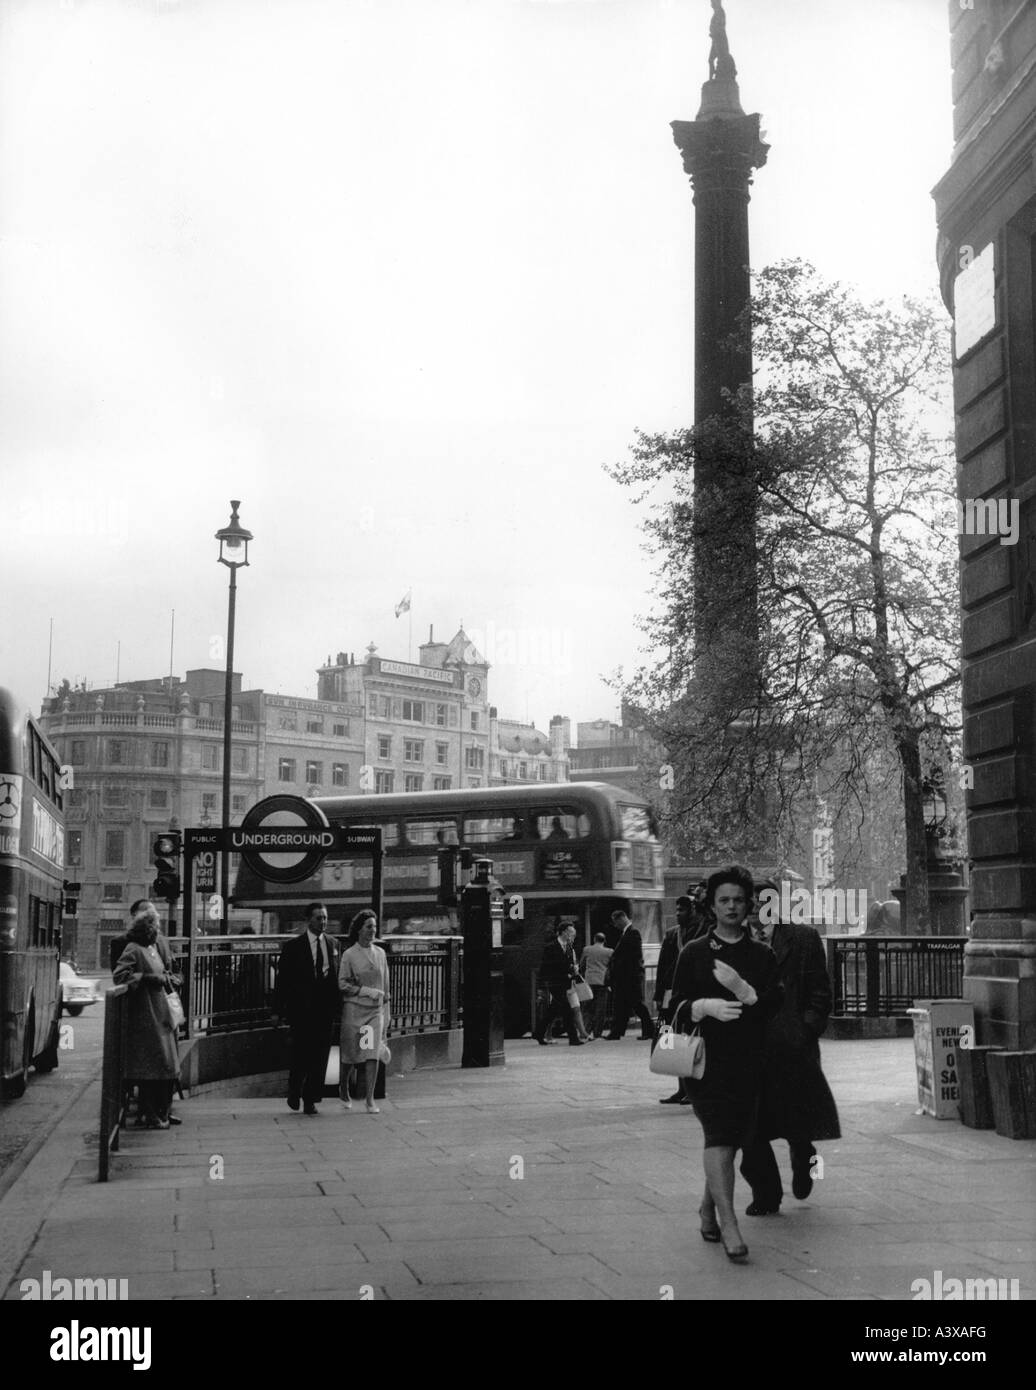 Geografia / viaggio, Gran Bretagna, Londra, piazze, Trafalgar Square, scena stradale con la stazione della metropolitana, 1950s, Foto Stock